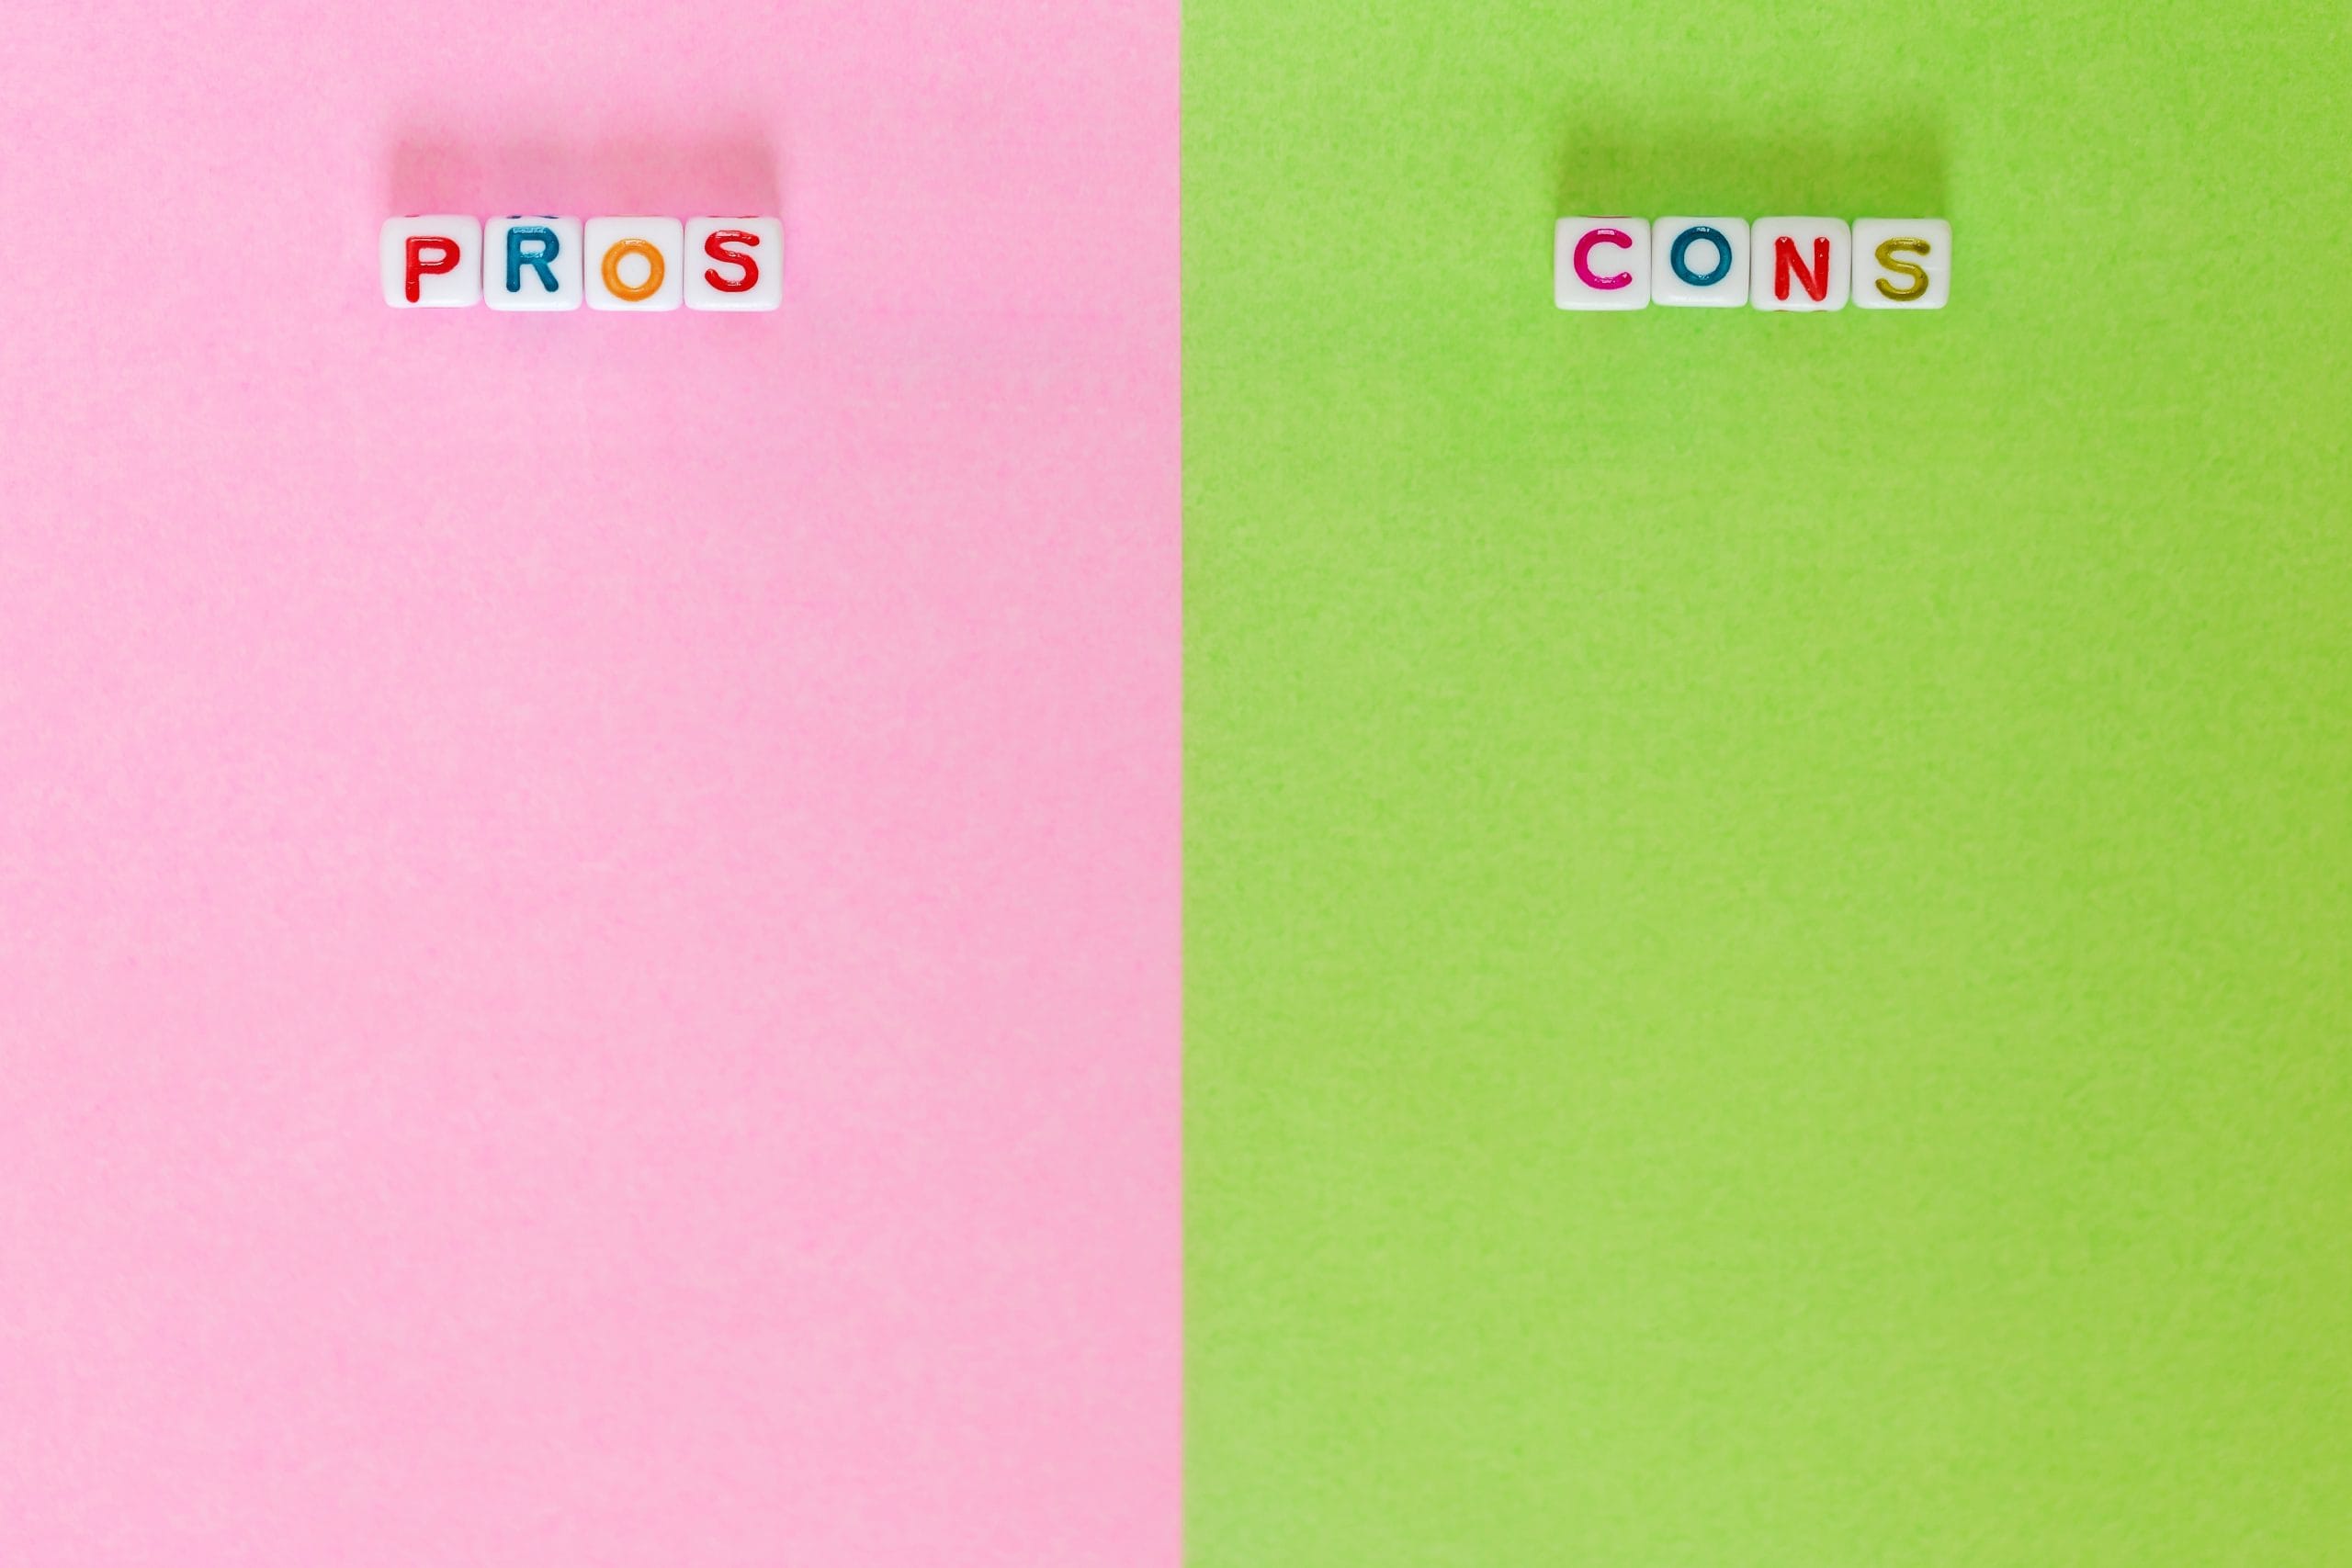 Auf der linken Seite des Bildes findest Du Buchstaben die das Wort "Pros" bilden, auf der rechten Seite des Bildes steht dagegen "Cons".